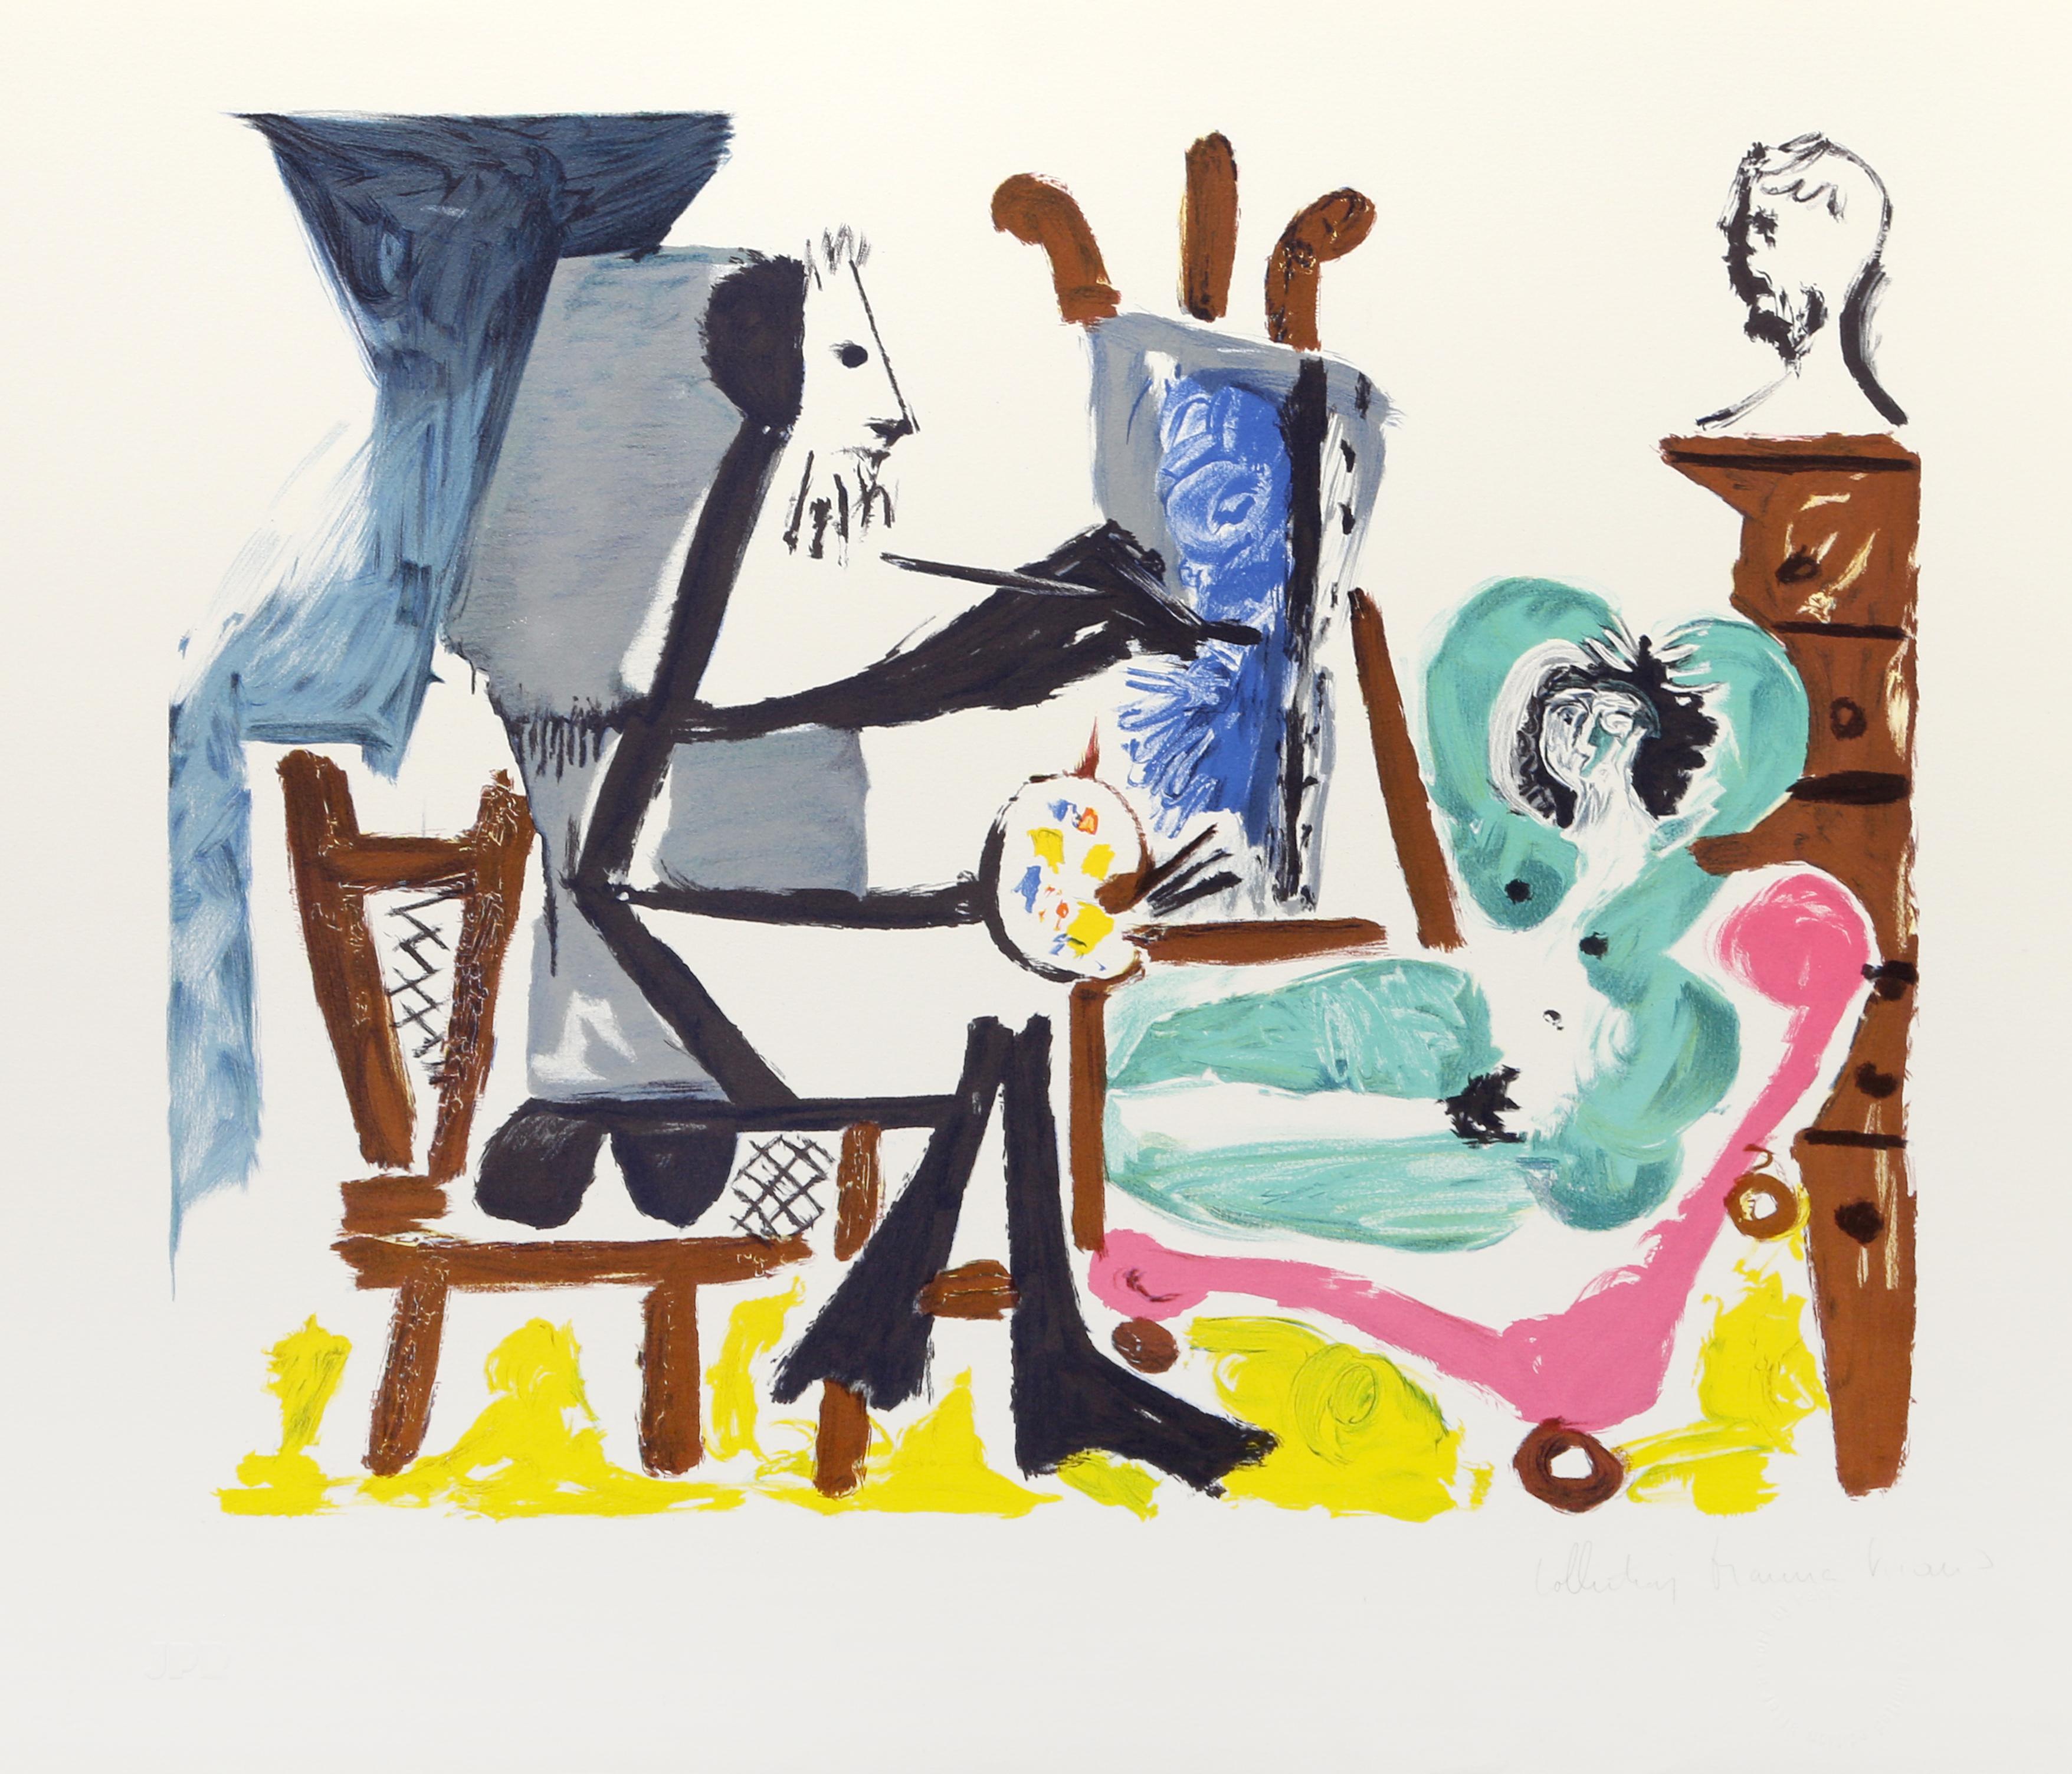 L'estampe de Pablo Picasso représente un peintre en train de capturer dans son studio l'image d'une femme nue posant sur un canapé ou une chaise longue. Assis à son chevalet, le peintre utilise de la peinture bleue sur sa toile, tandis que la femme